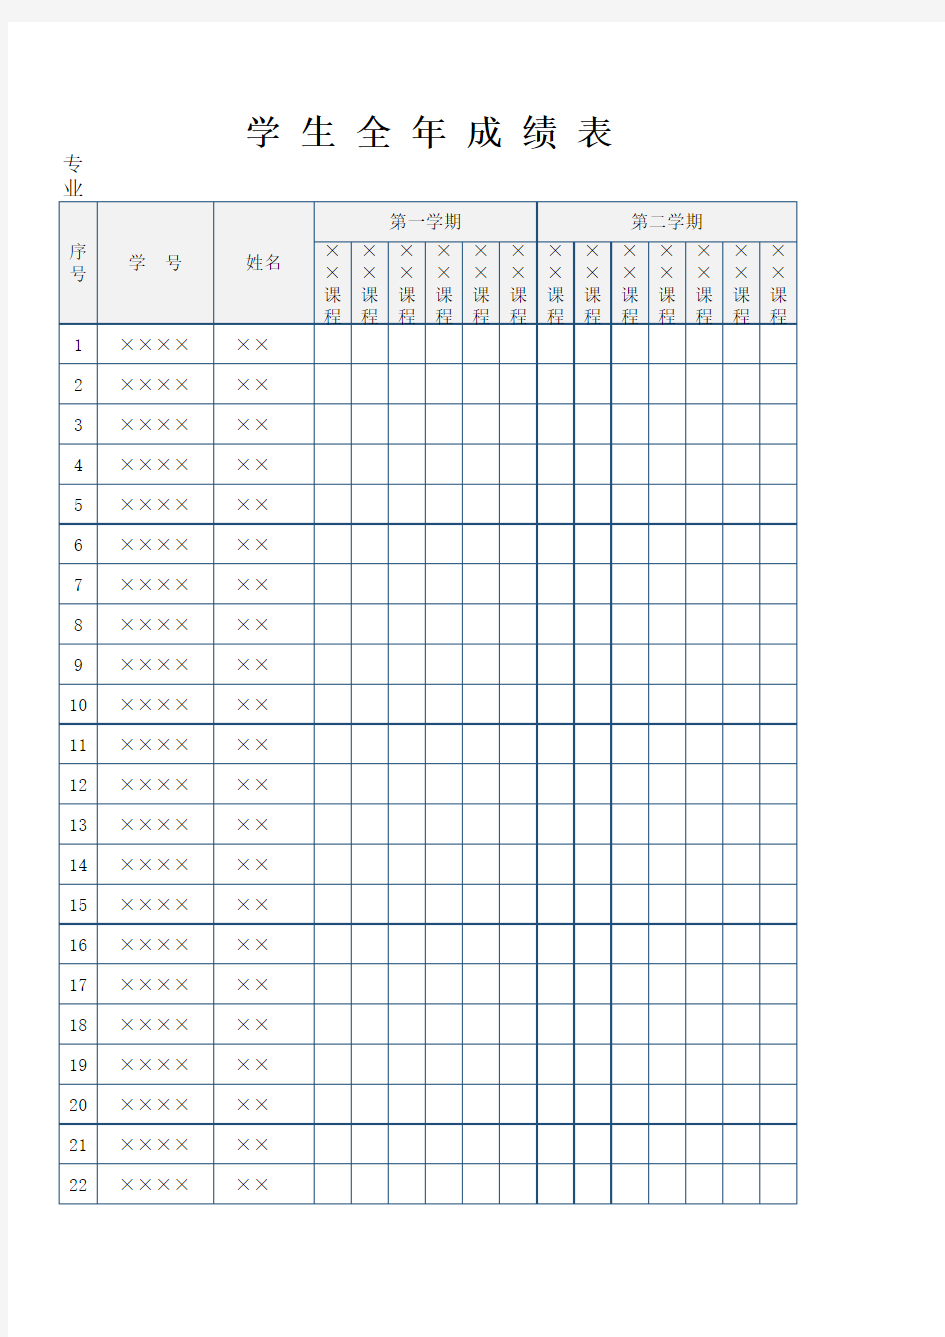 学生考试成绩统计表Excel模板